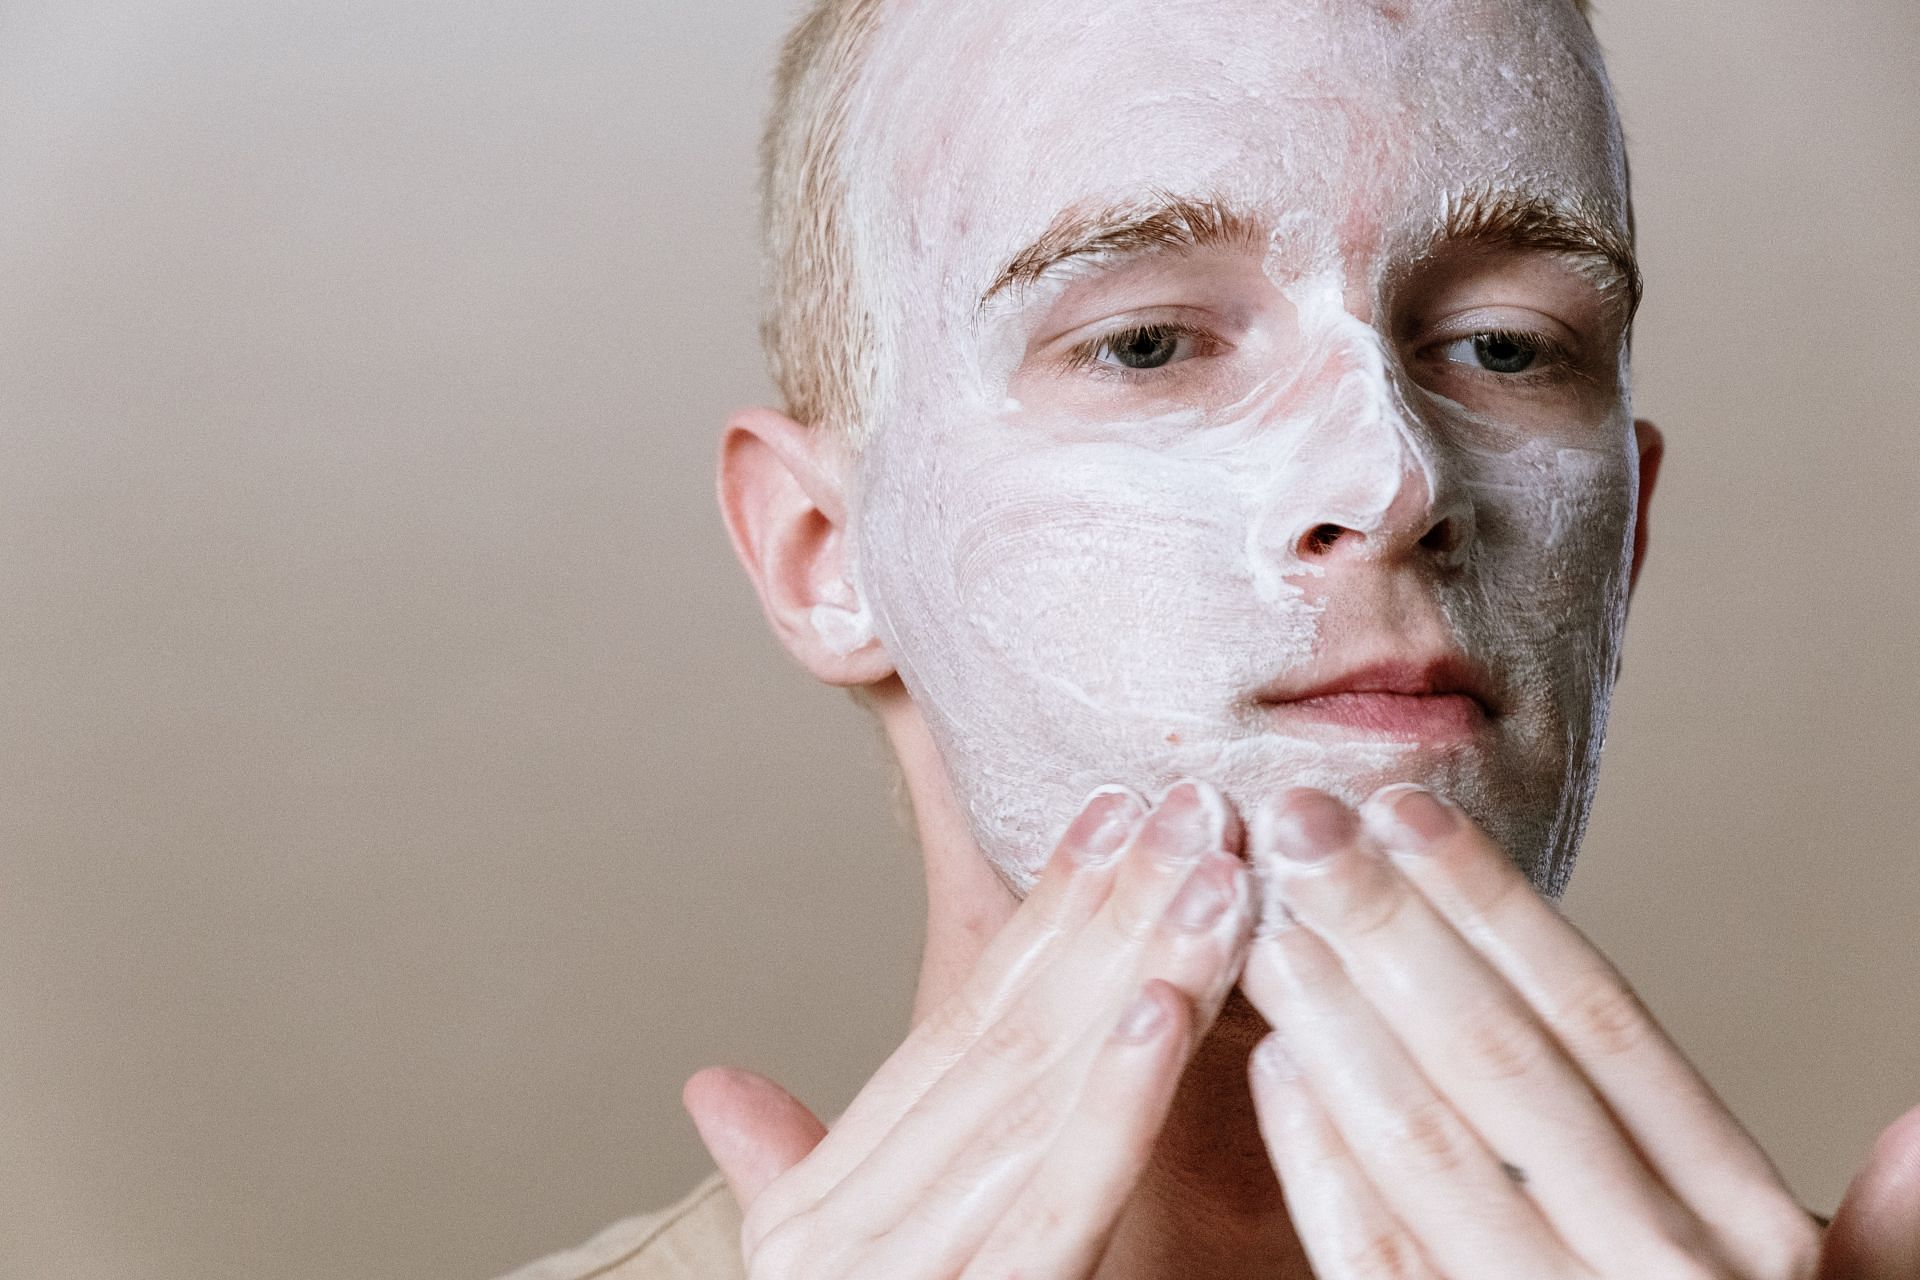 Certain lifestyle change can help prevent acne. (Image via Pexels/Cottonbro Studio)